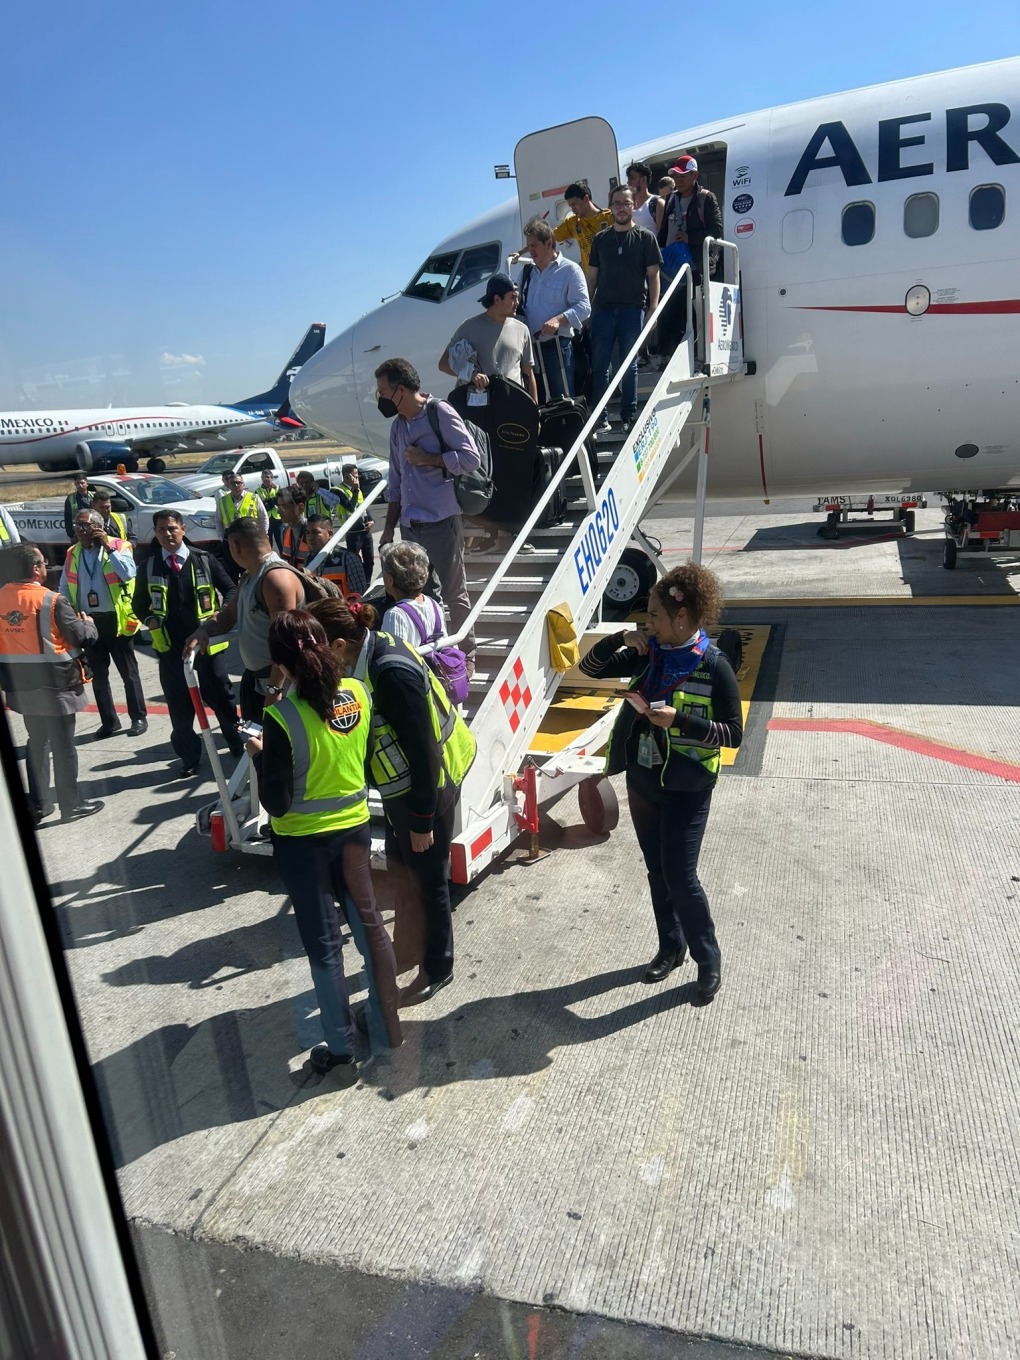 Hành khách rời chuyến bay AM672 của hãng không AeroMexico sau sự cố (ảnh: India Times)